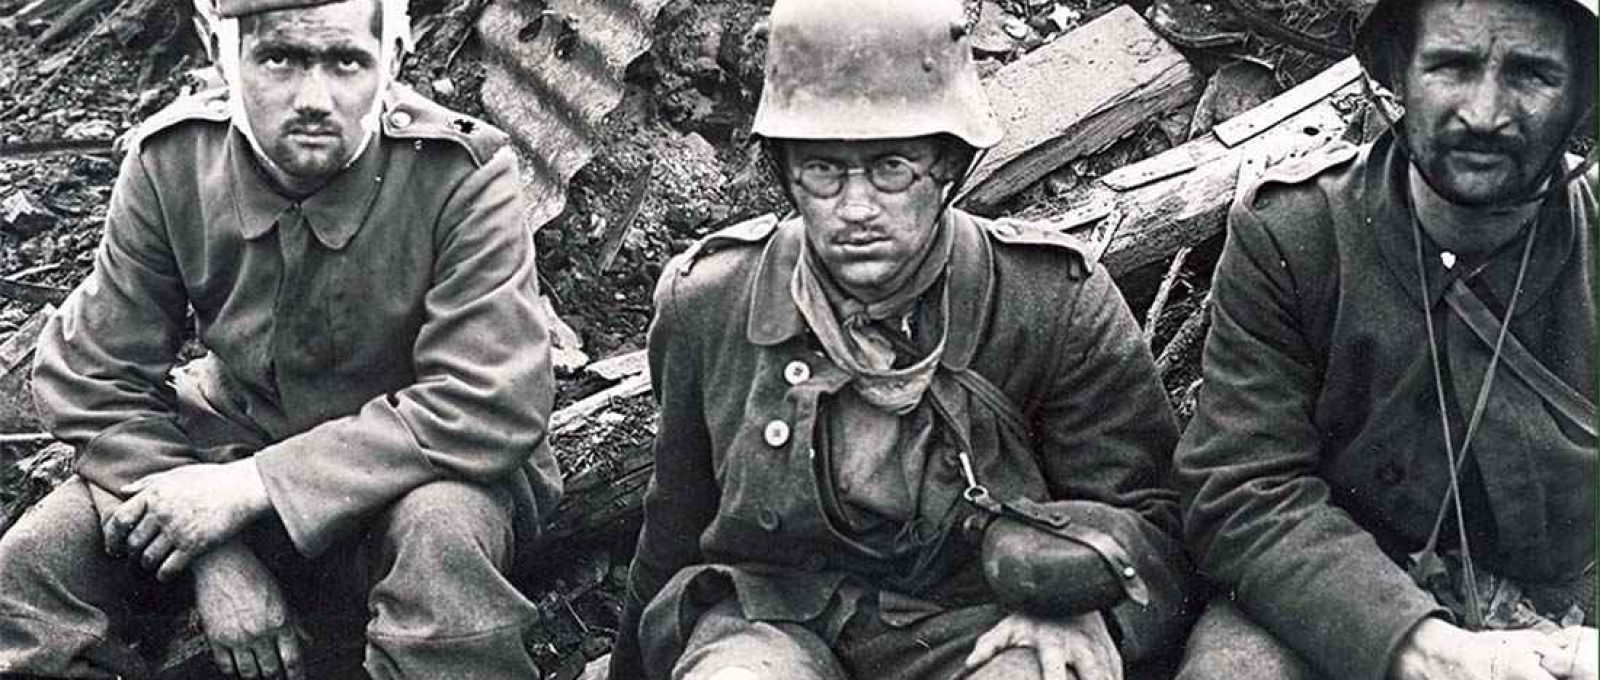 Soldados da Primeira Guerra Mundial em Flandres, Bélgica (Museu de Guerra Imperial/Flickr).